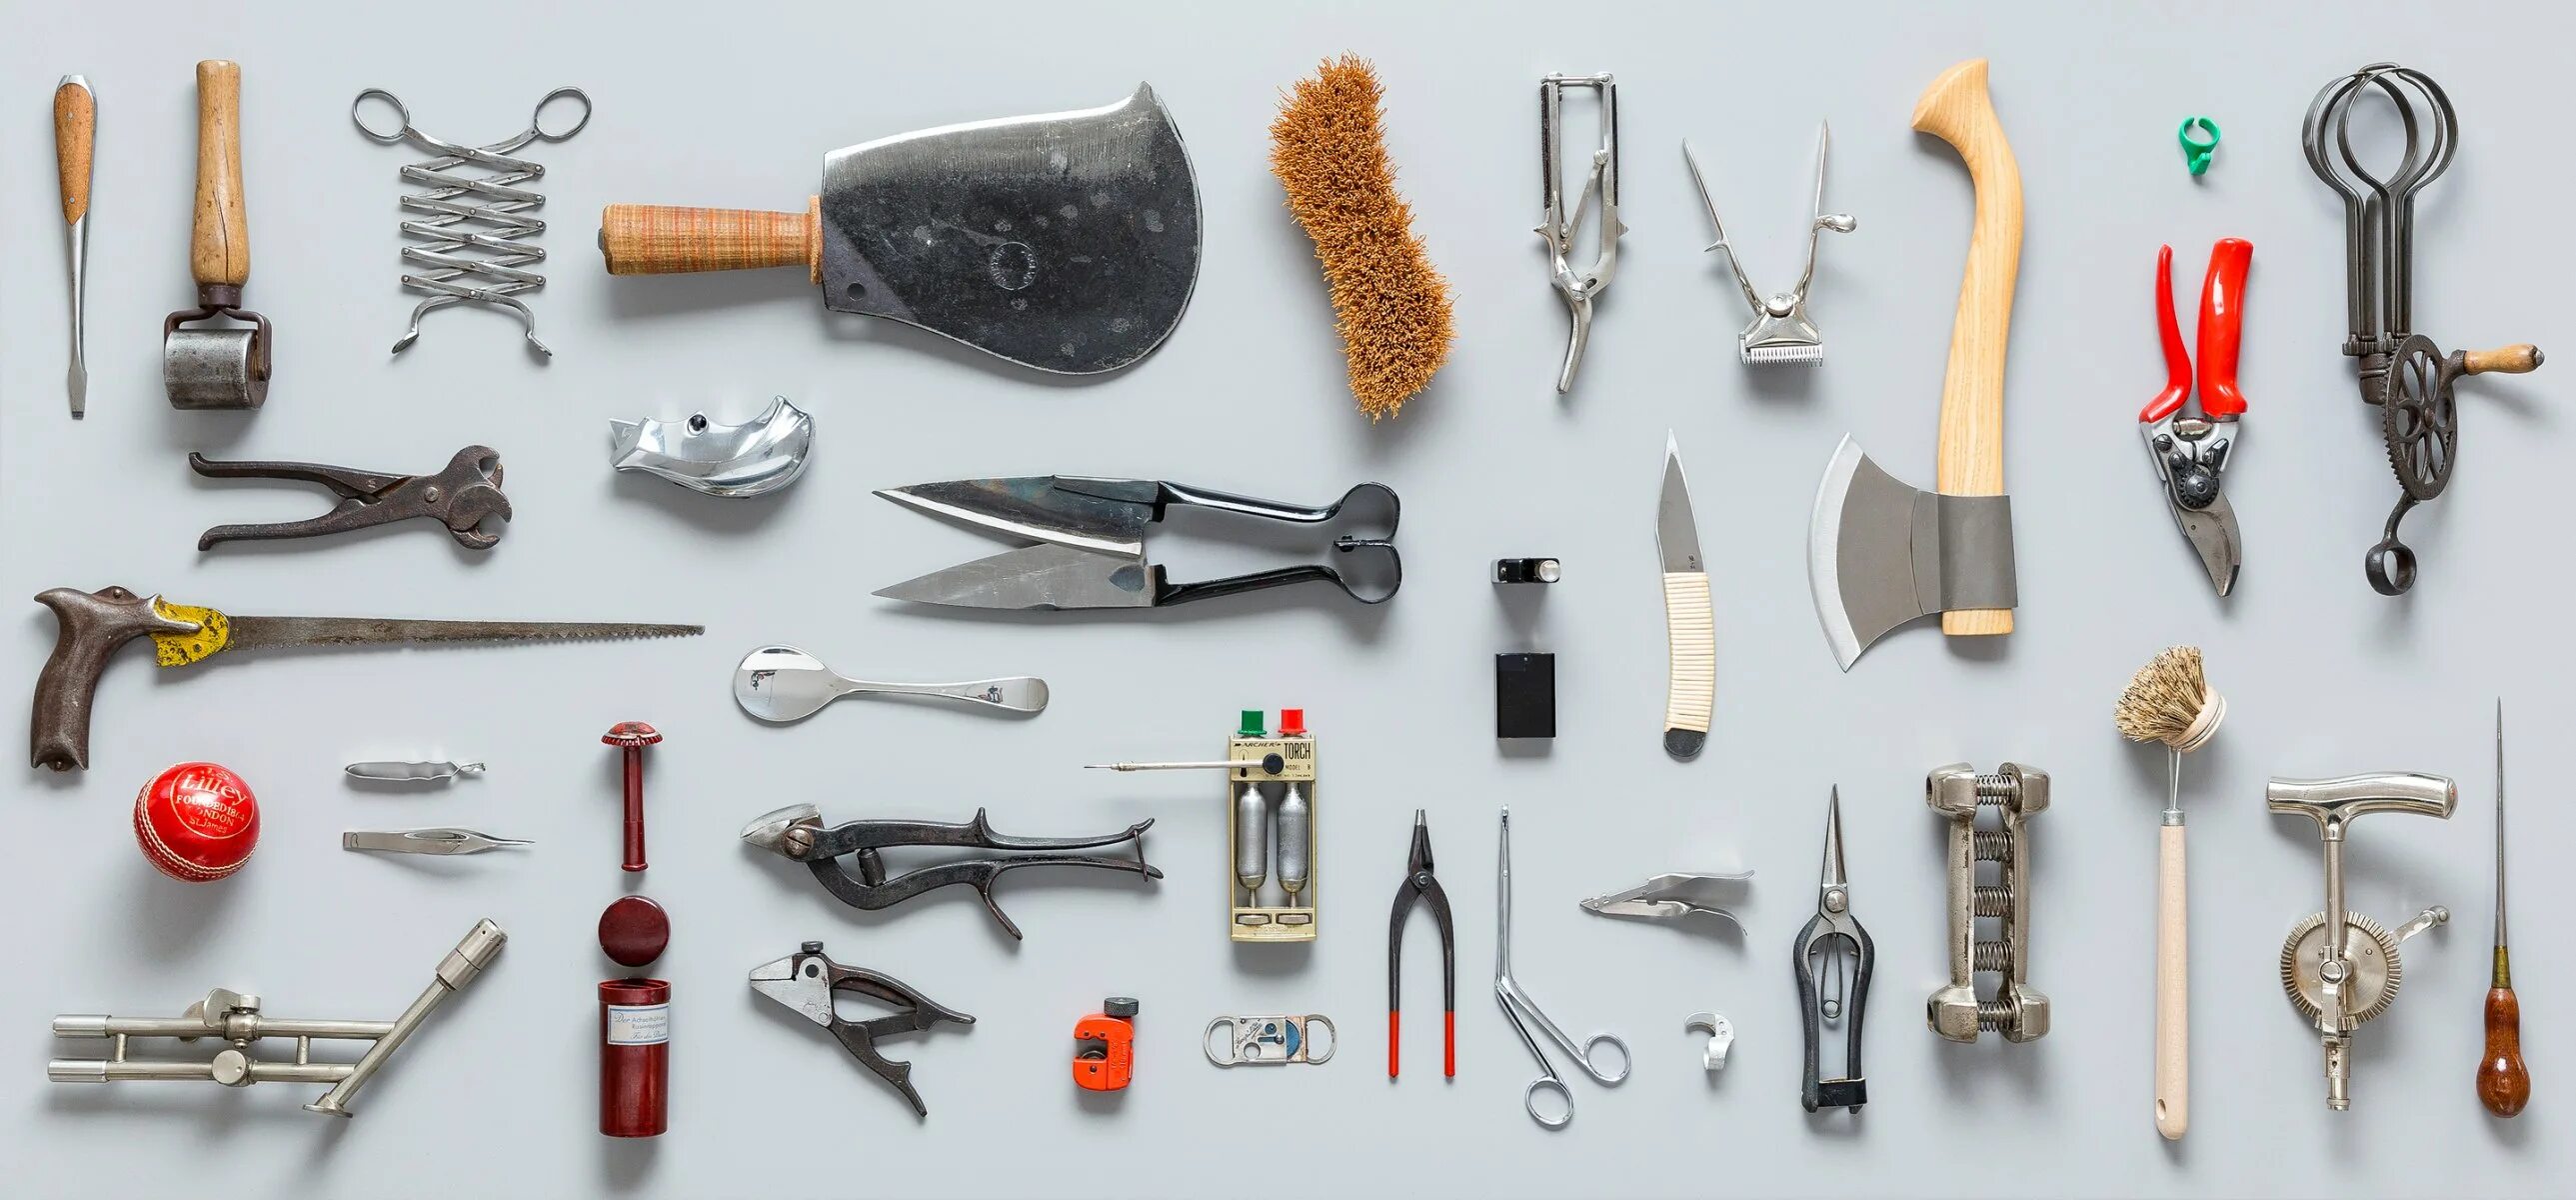 Take tools. Строительные инструменты. Рабочие инструменты. Ручной инструмент. Разные инструменты.